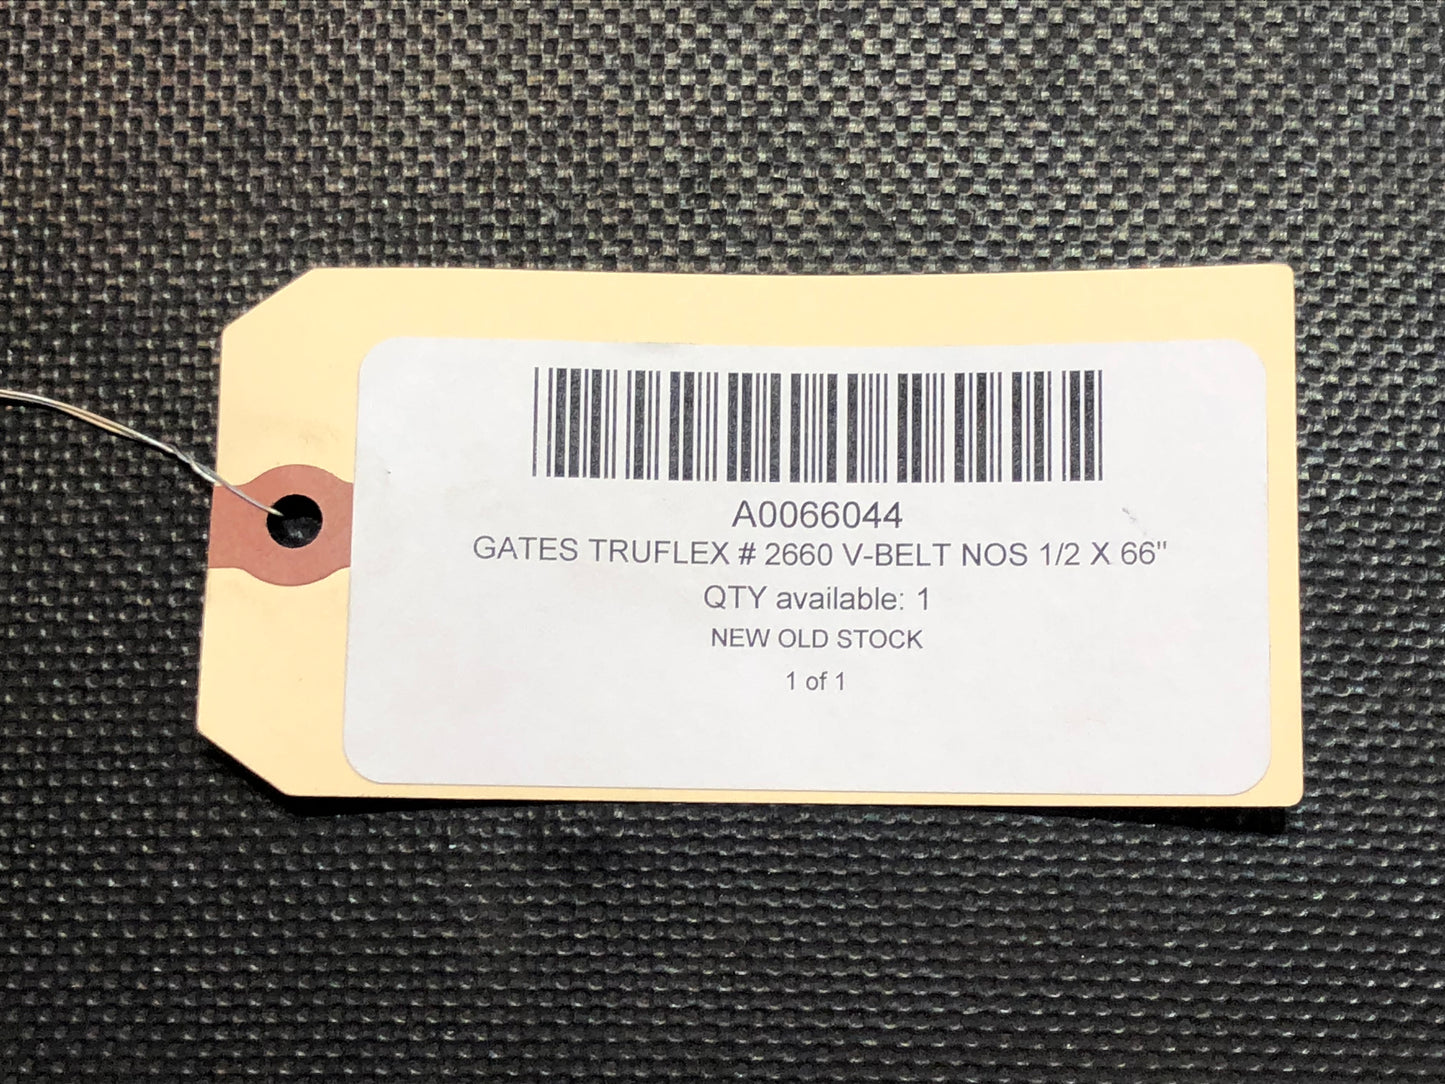 Gates Truflex # 2660 V-Belt NOS 1/2 X 66"